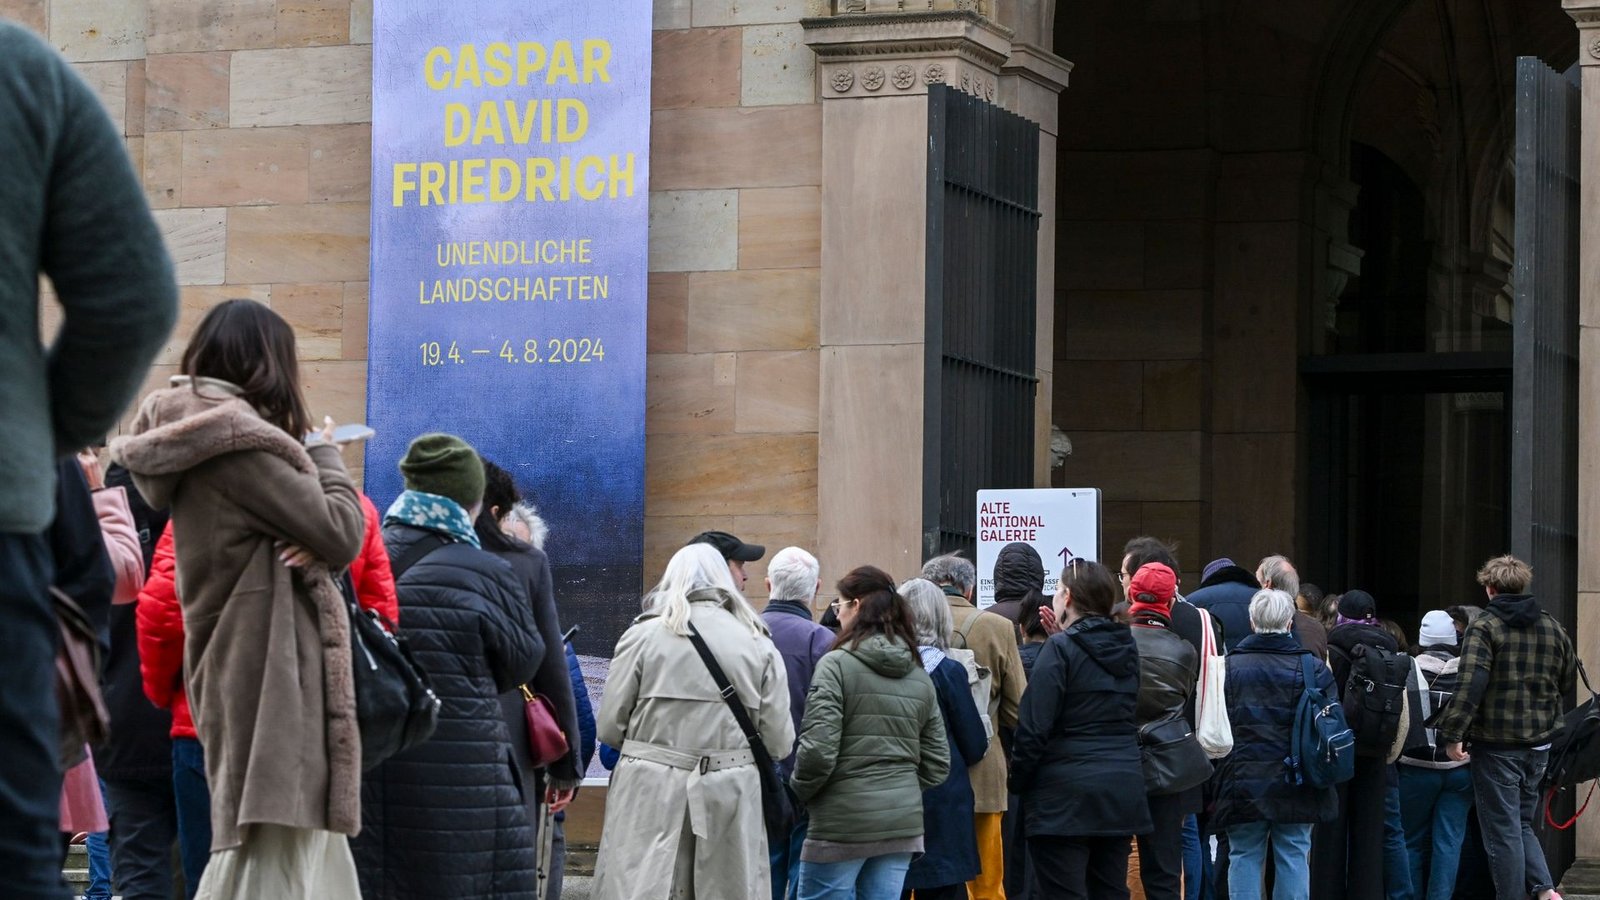 Im Vorverkauf wurden für die Caspar-David-Friedrich-Ausstellung bisher etwa 75.000 Einzeltickets verkauft.Foto: Jens Kalaene/dpa